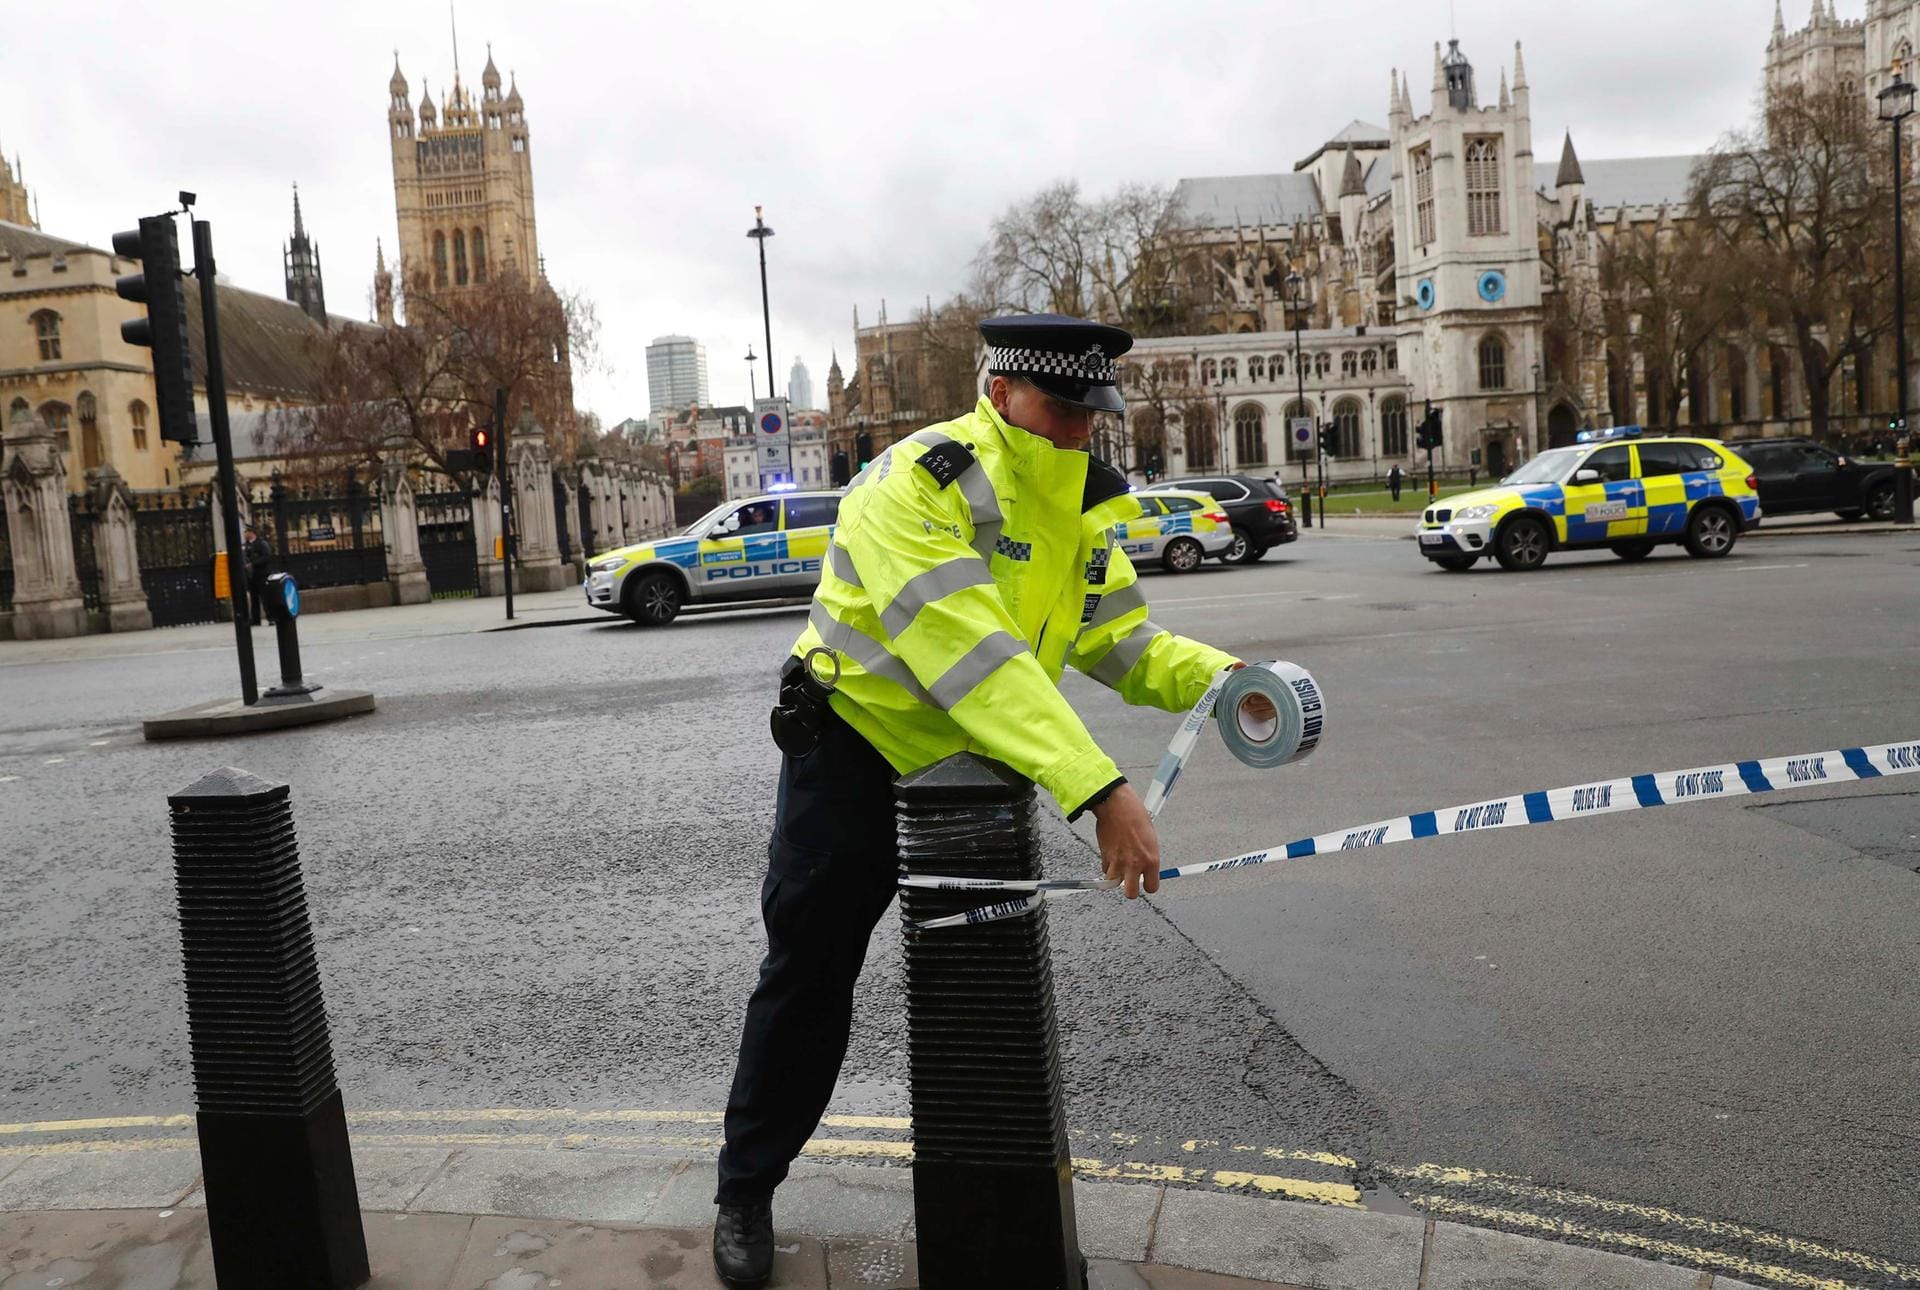 Sperrgebiet: Ein Polizist sperrt nach den Angriffen das Gebiet um das englische Parlament in London ab. In der englischen Hauptstadt fielen Schüsse, und es gab eine vermeintliche Amokfahrt.